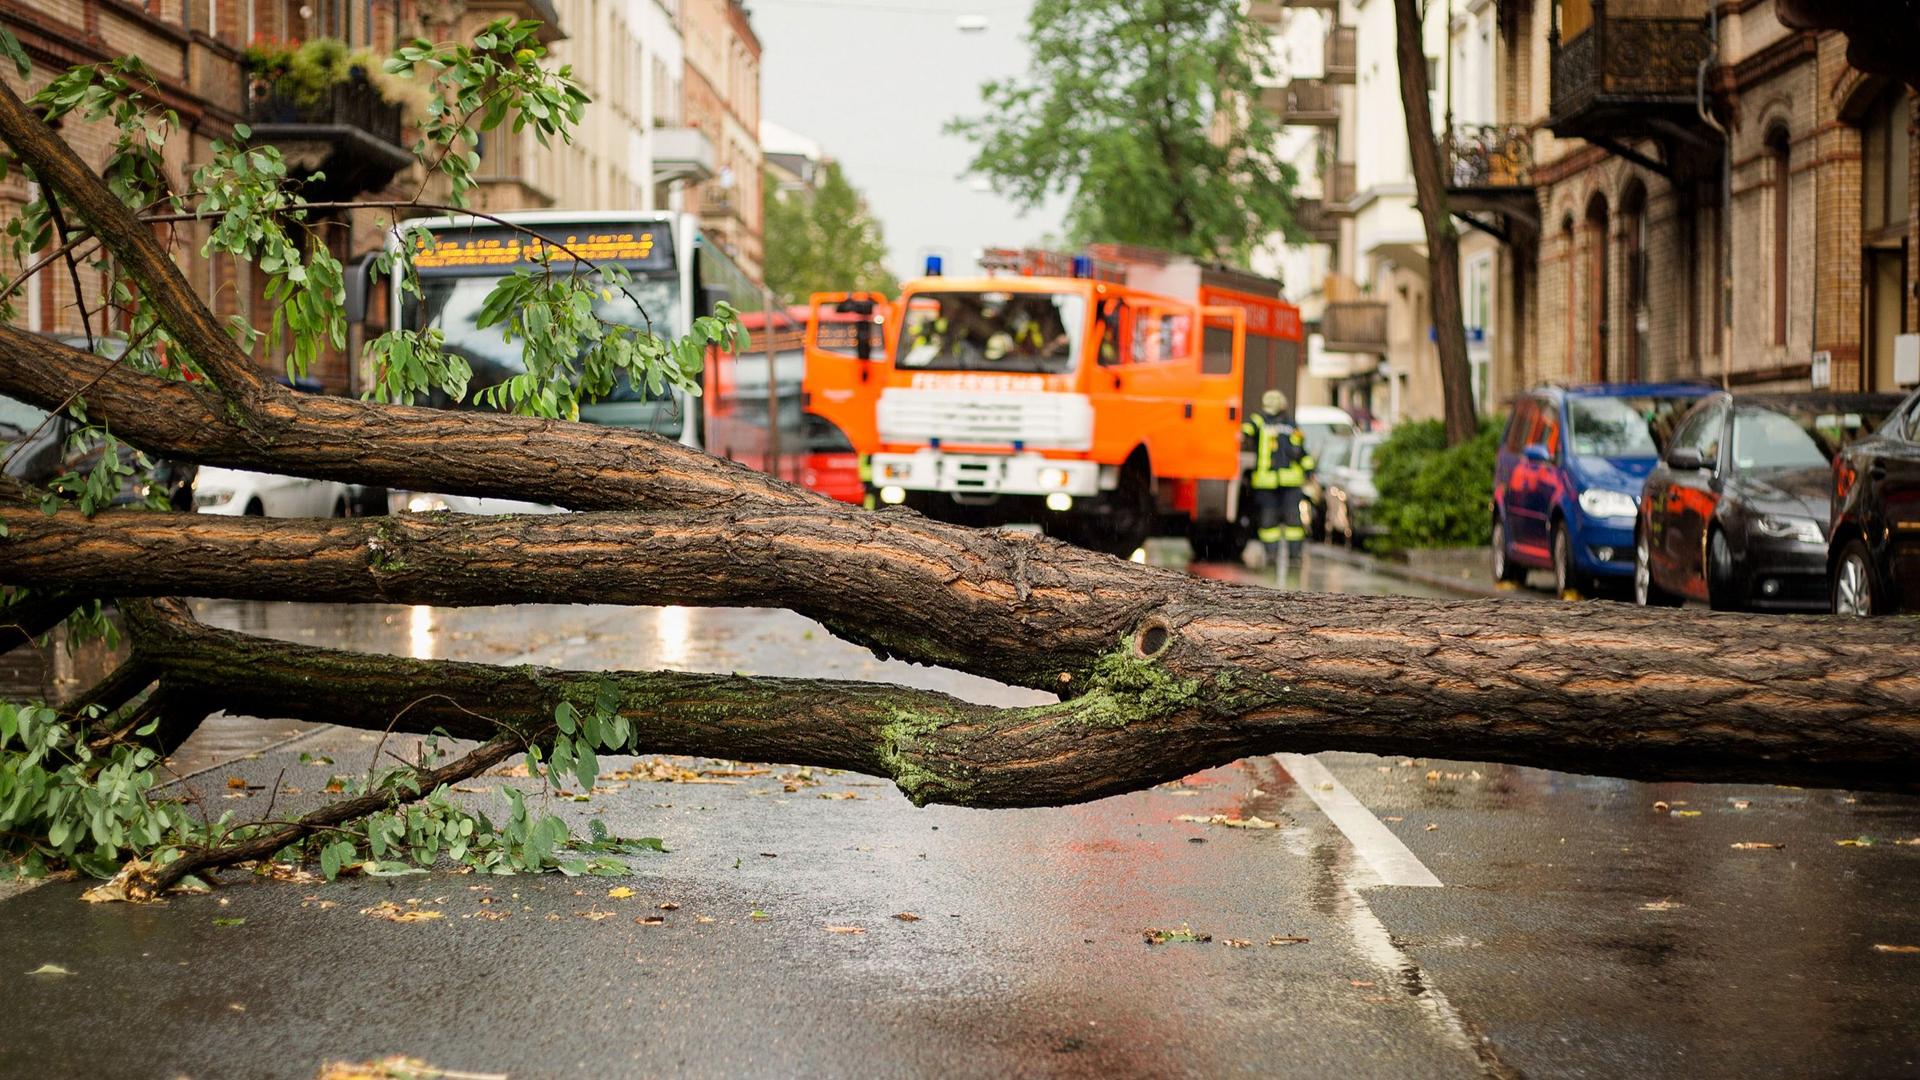 Ein Baum versperrt die Straße nach einem Sturm. Im Hintergrund ein stehender Bus und Feuerwehrfahrzeuge.